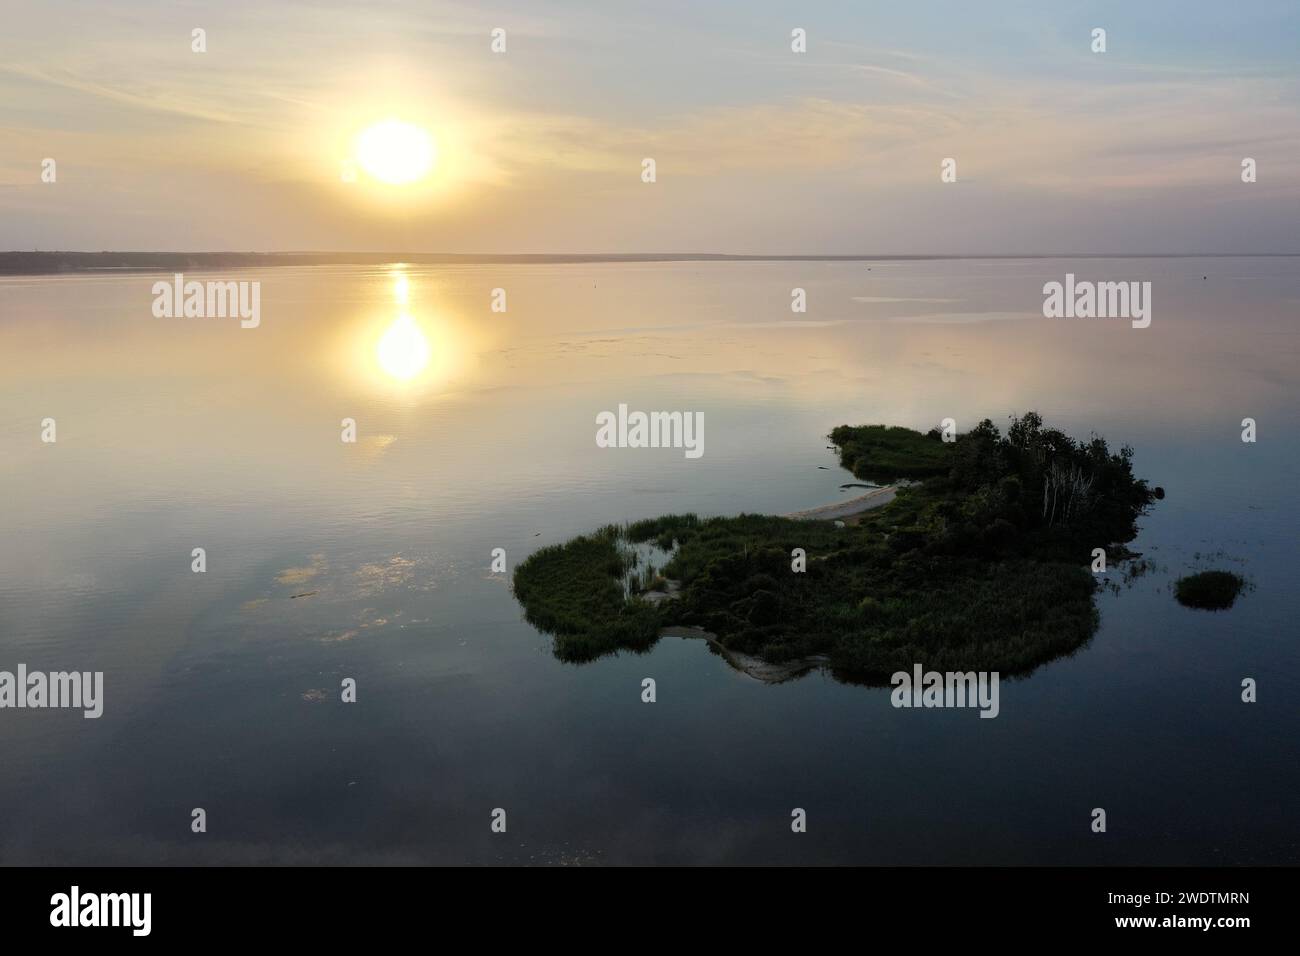 coucher de soleil sur le lac et une petite île, filmé depuis un drone. Photo de haute qualité Banque D'Images